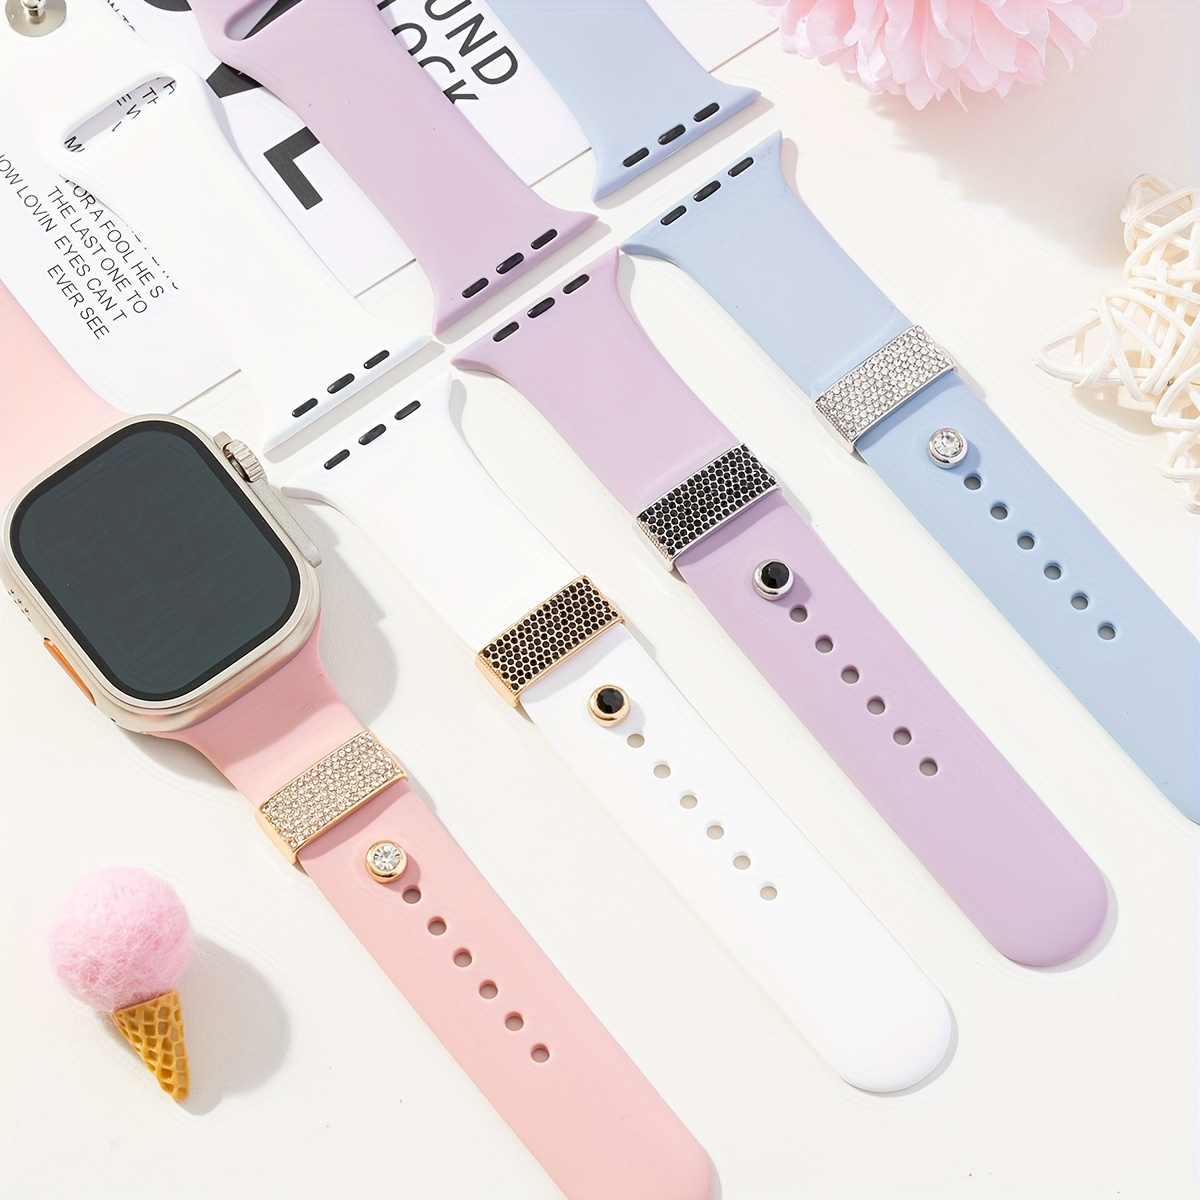  Para Redmi Watch 2 bandas, correas de silicona suave, pulsera  deportiva, transpirable y resistente al sudor, accesorios de repuesto para  Xiaomi Redmi Watch 2 Lite, regalo de Navidad ideal para mujeres